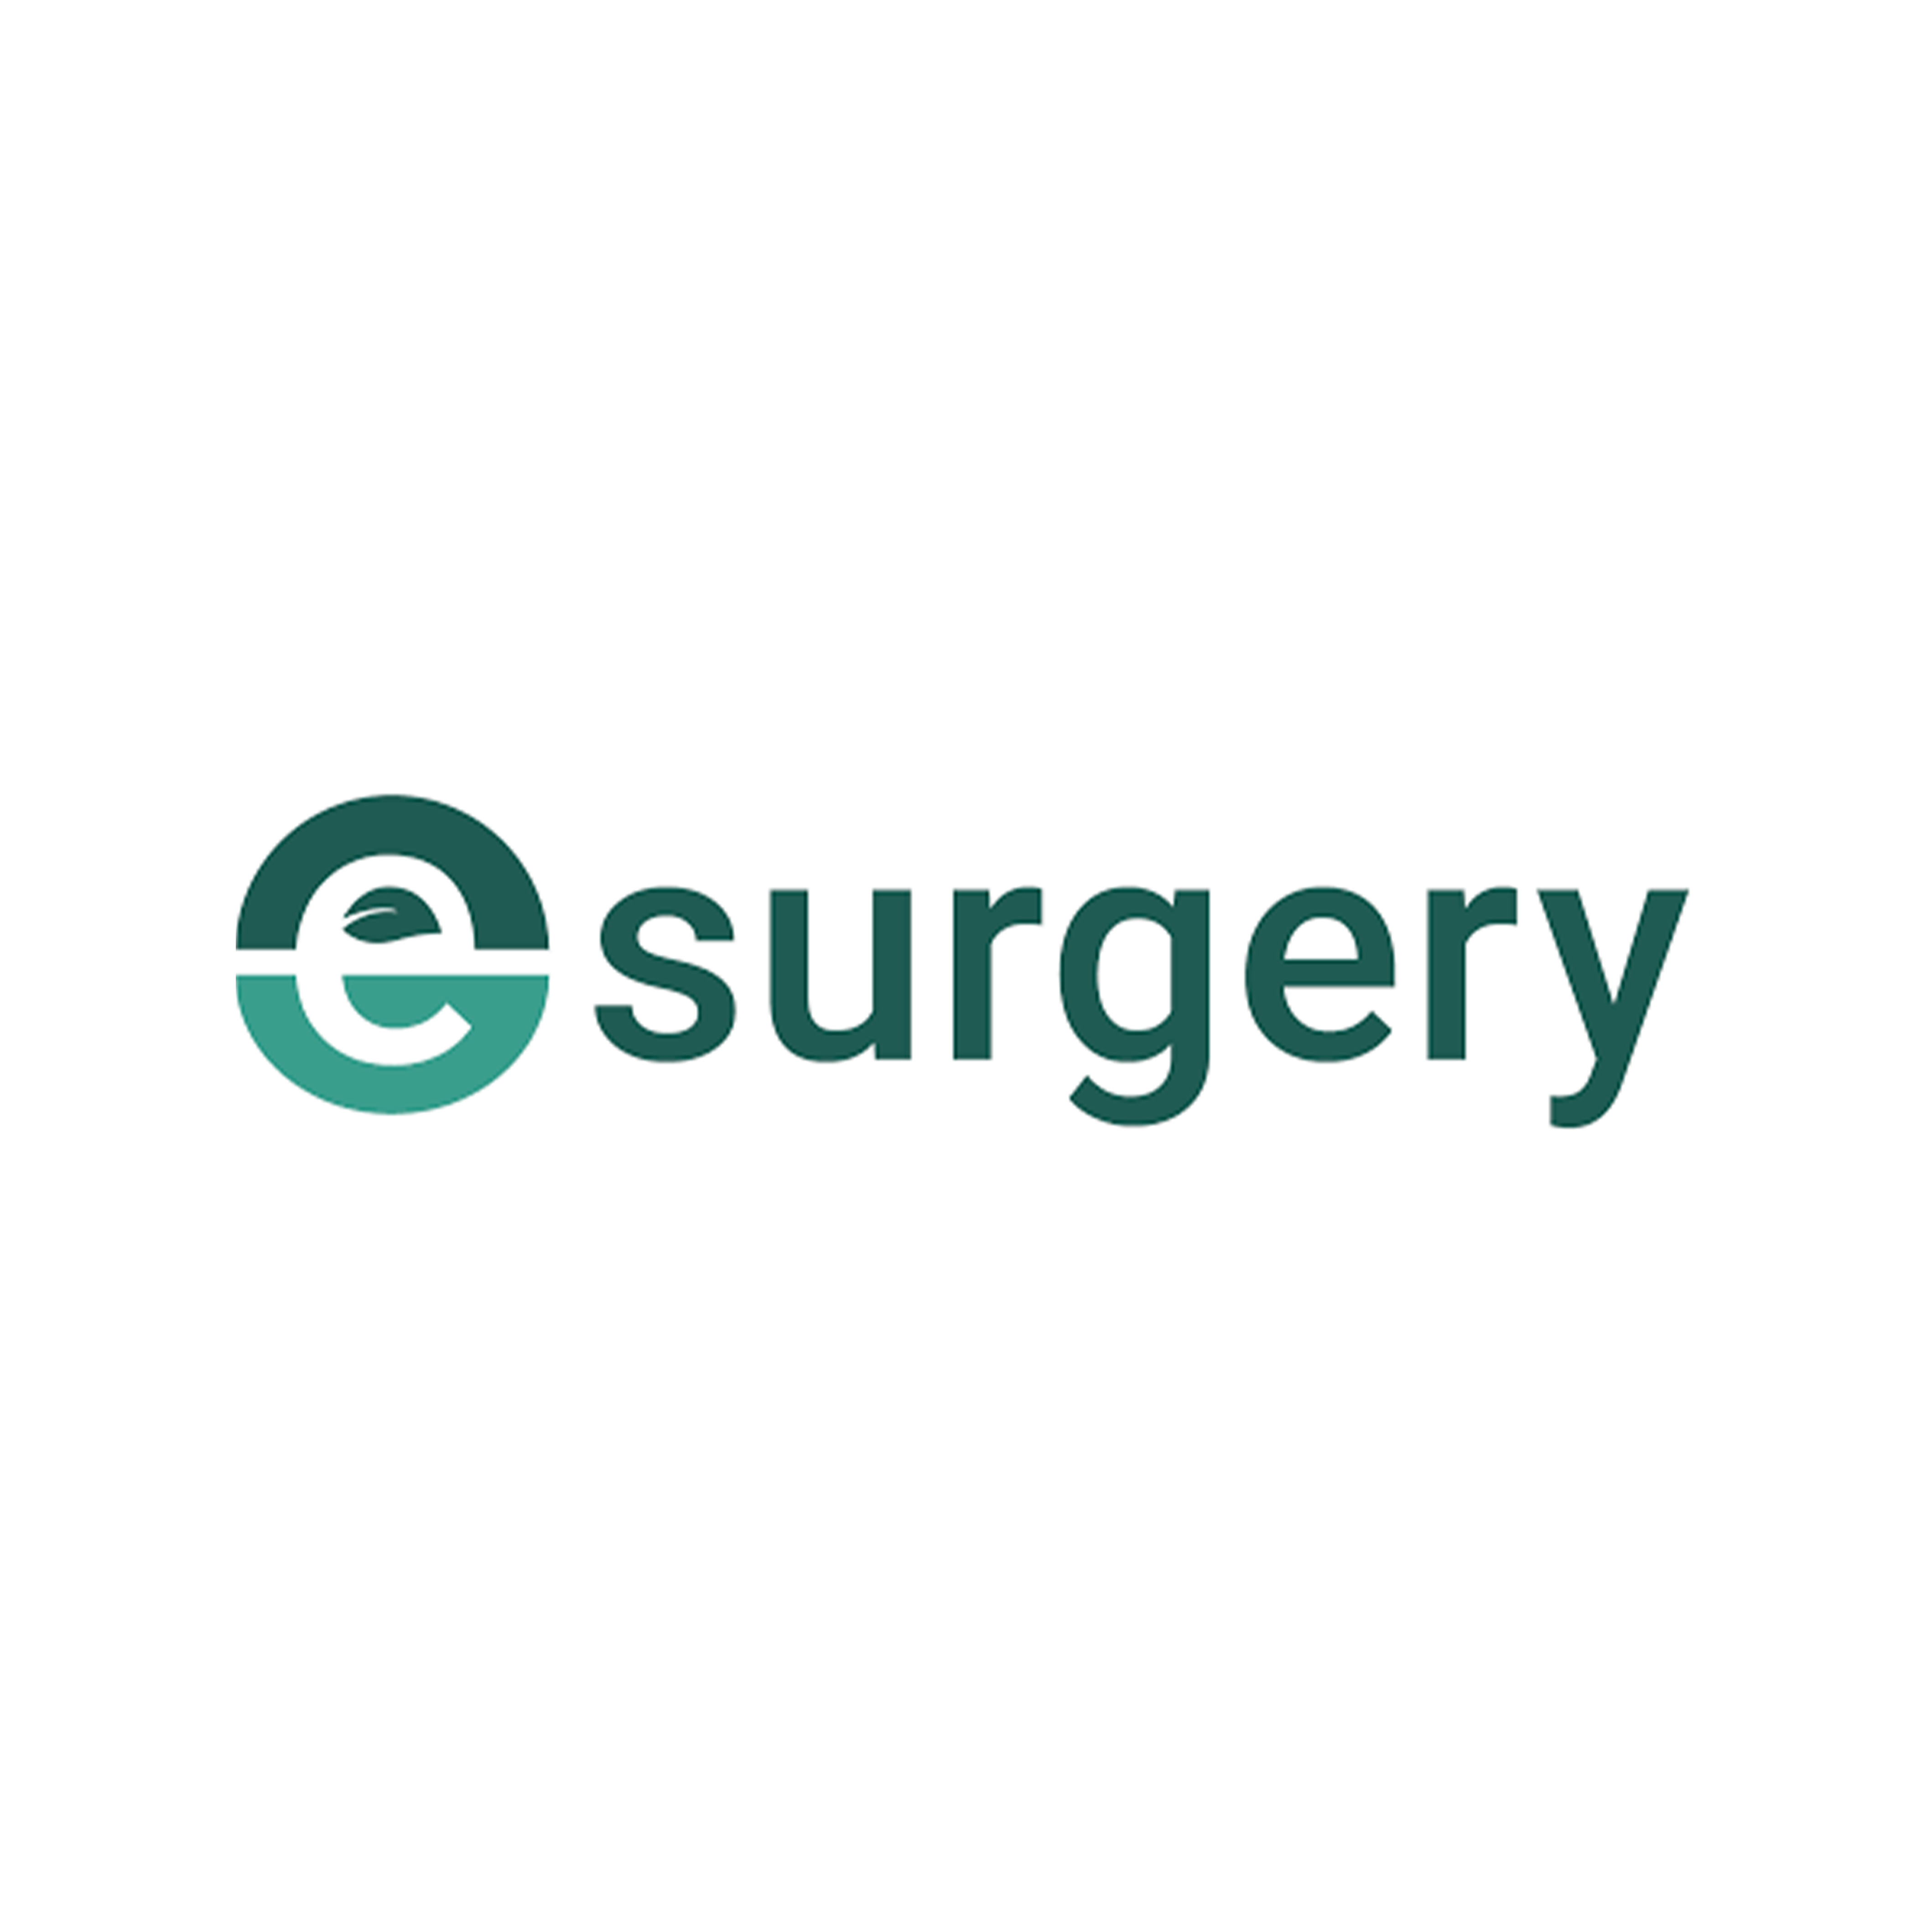 E-Surgery logo